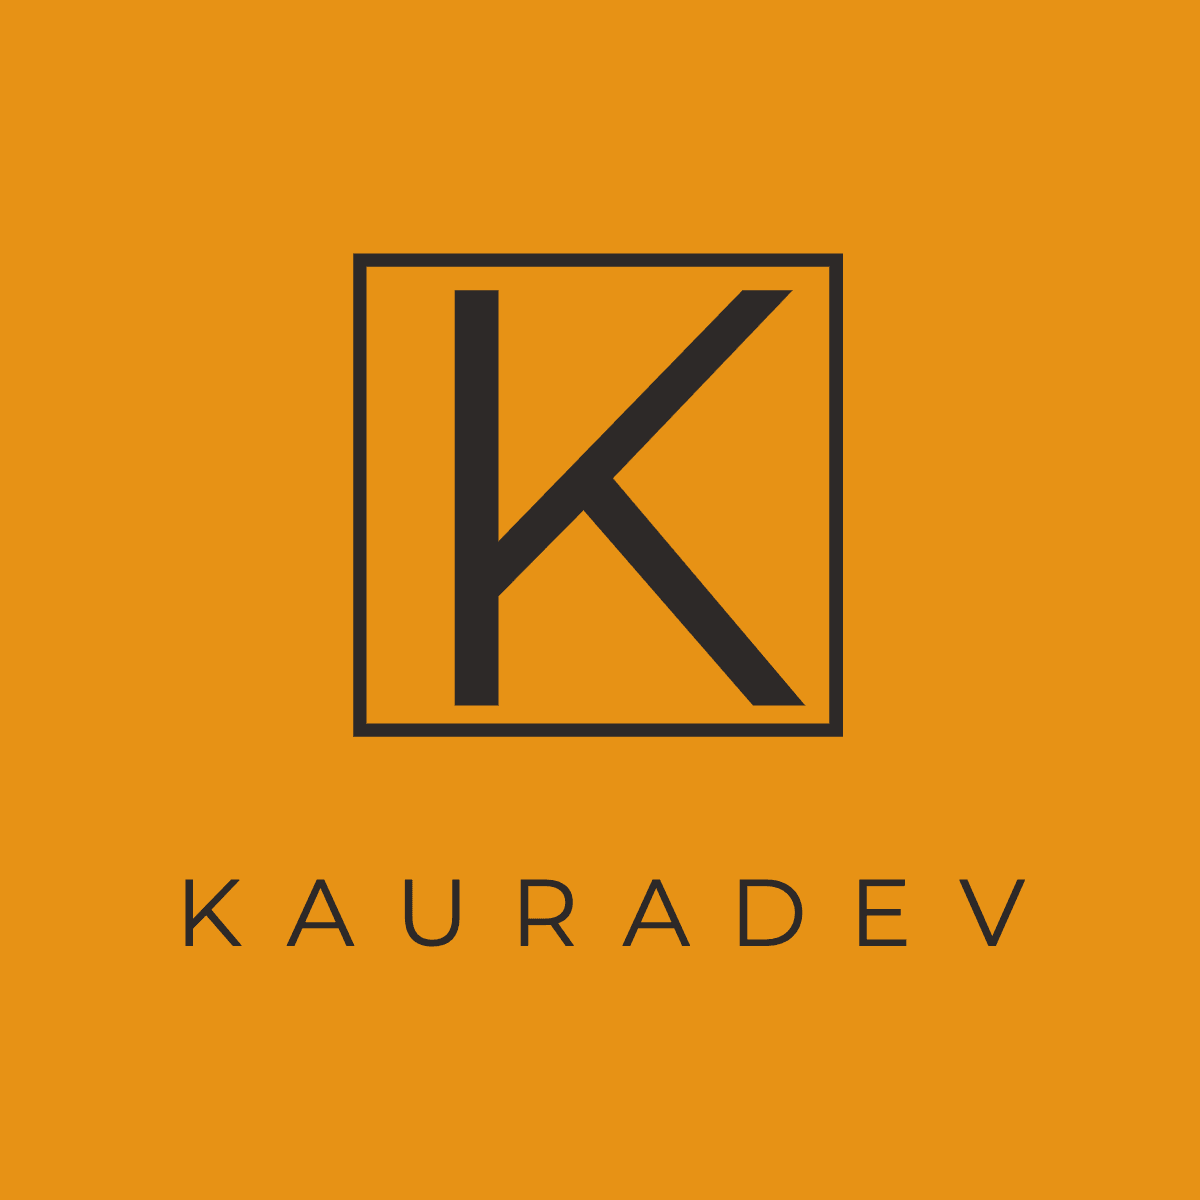 KauraDev